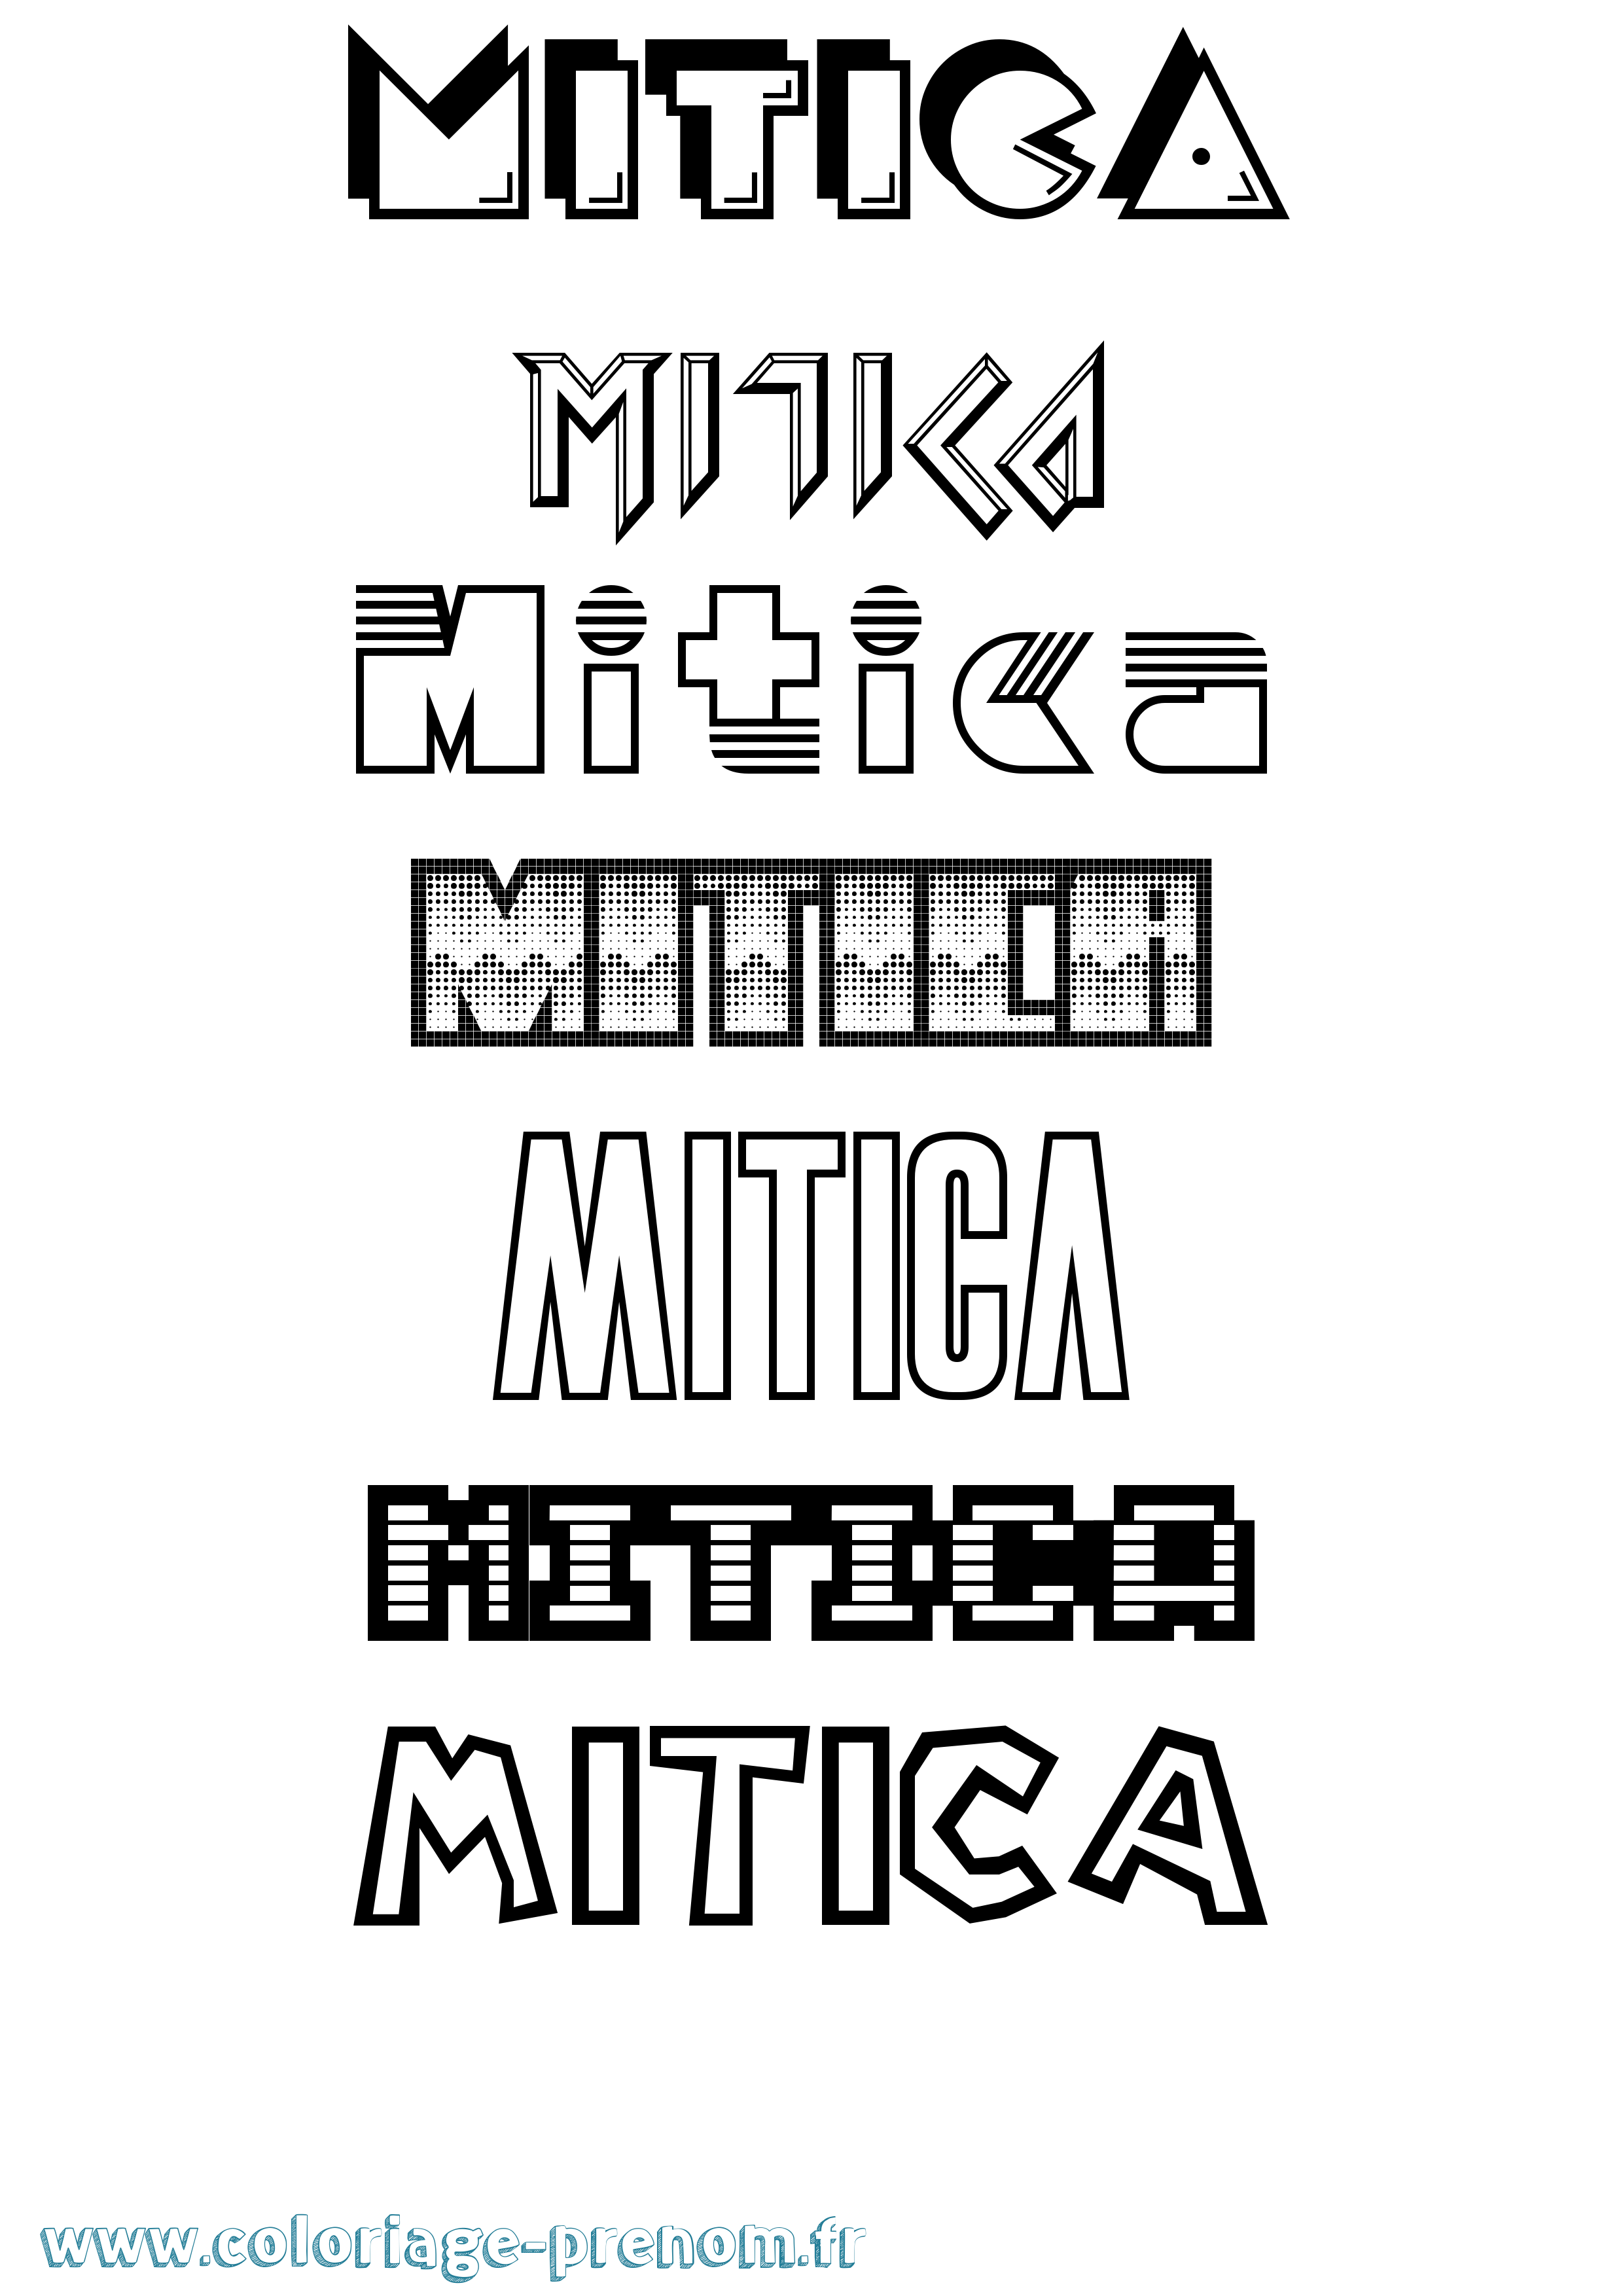 Coloriage prénom Mitica Jeux Vidéos